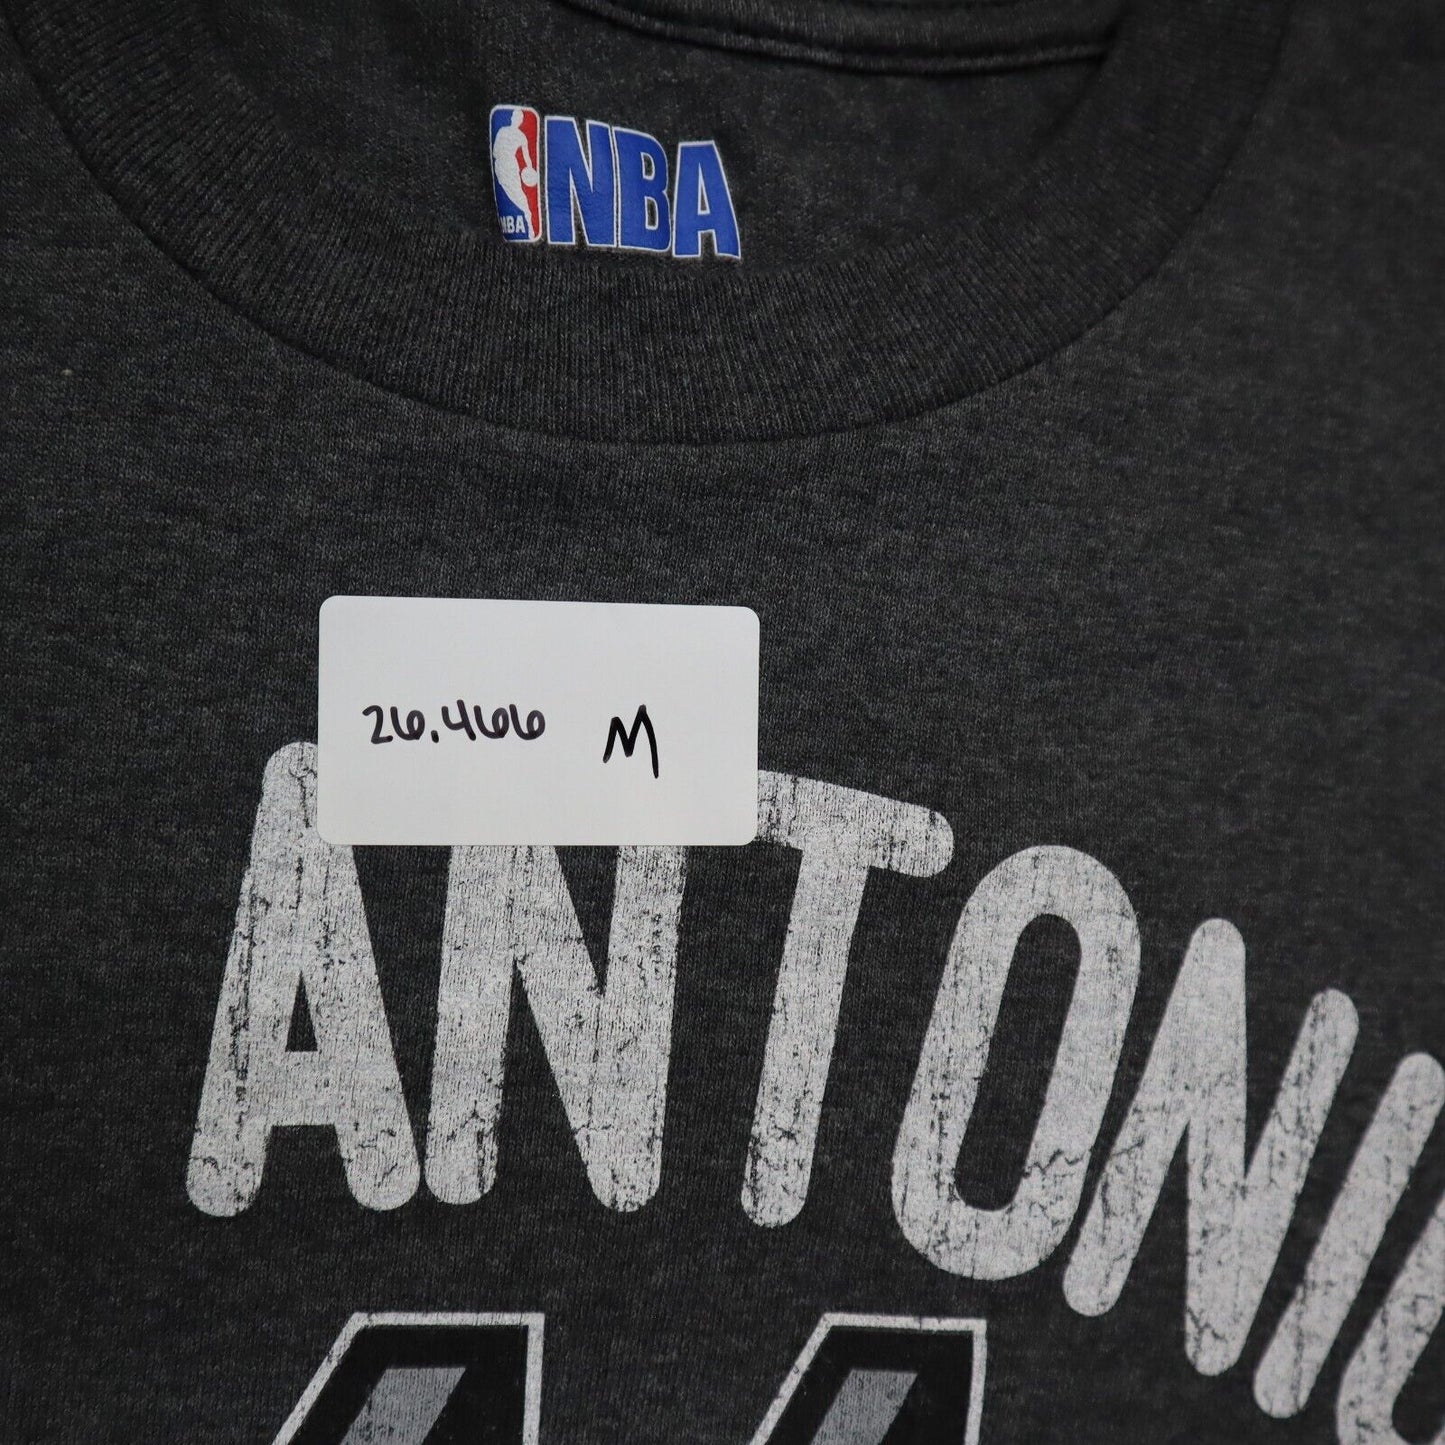 NBA Mens SAN ANTONIO Graphics T Shirt Short Sleeves Charcoal Gray Size XL